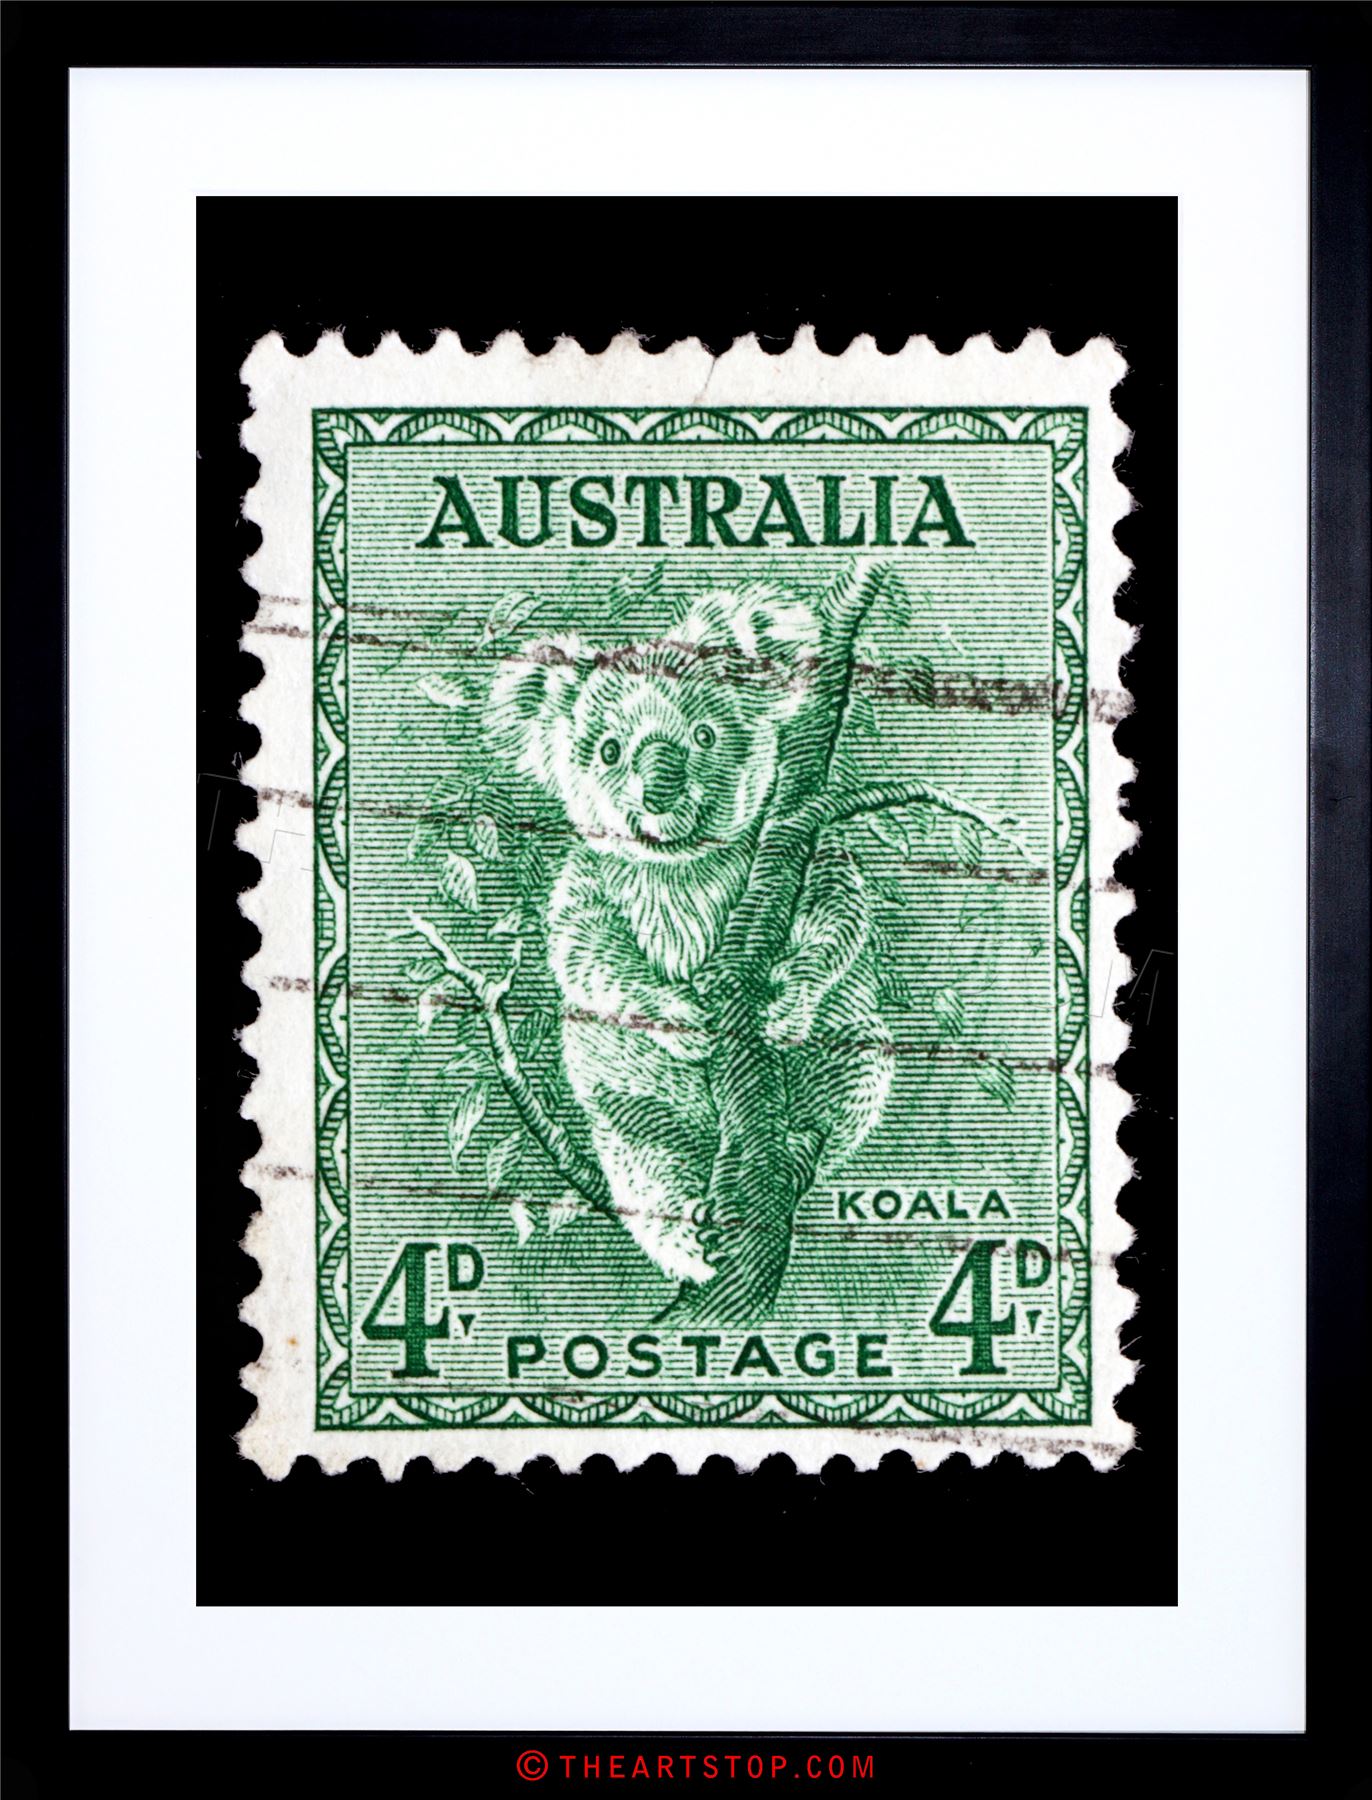 POSTAGE STAMP AUSTRALIA KOALA ANIMAL PHOTO FRAMED PRINT F12X6471 | eBay